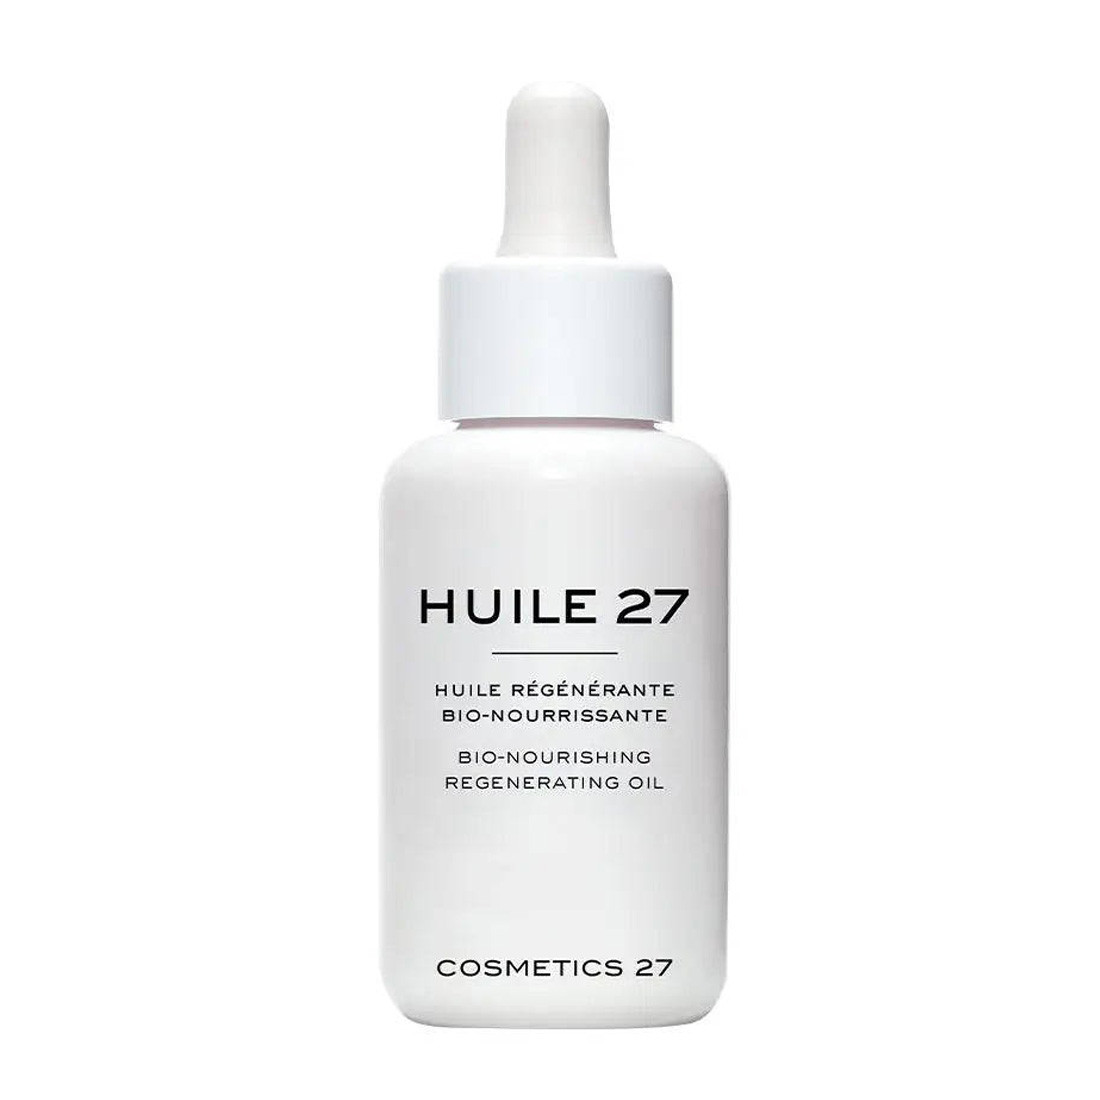 Cosmetics 27 Hulie 27 Bio-Nourising Cell Regenerating Oil - Питательное масло для регенерации кожи